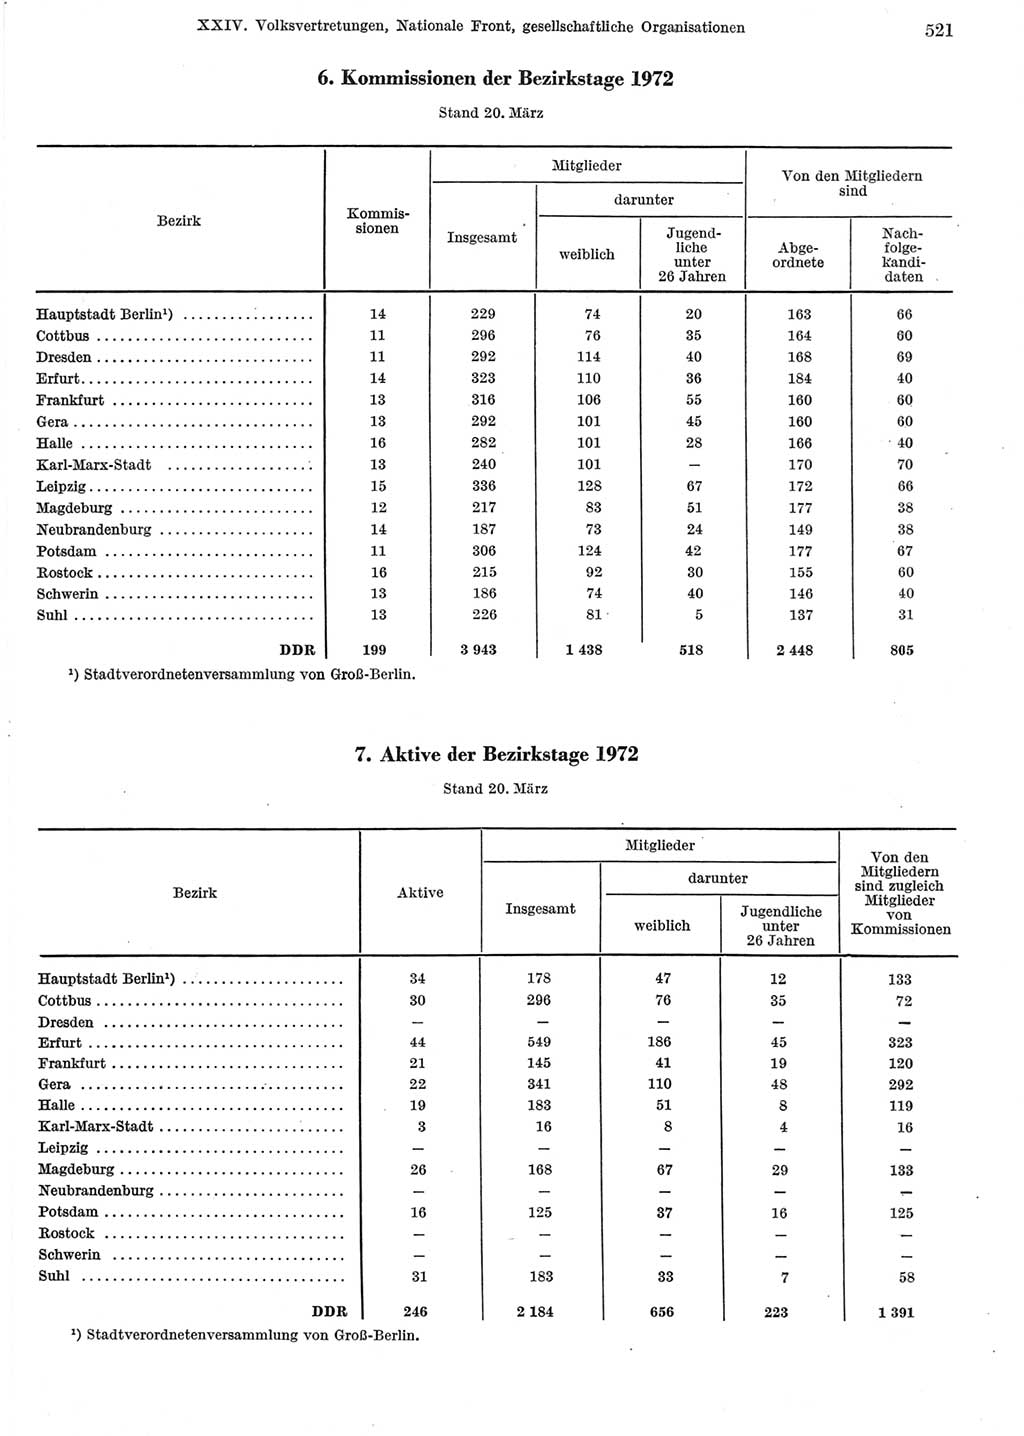 Statistisches Jahrbuch der Deutschen Demokratischen Republik (DDR) 1973, Seite 521 (Stat. Jb. DDR 1973, S. 521)